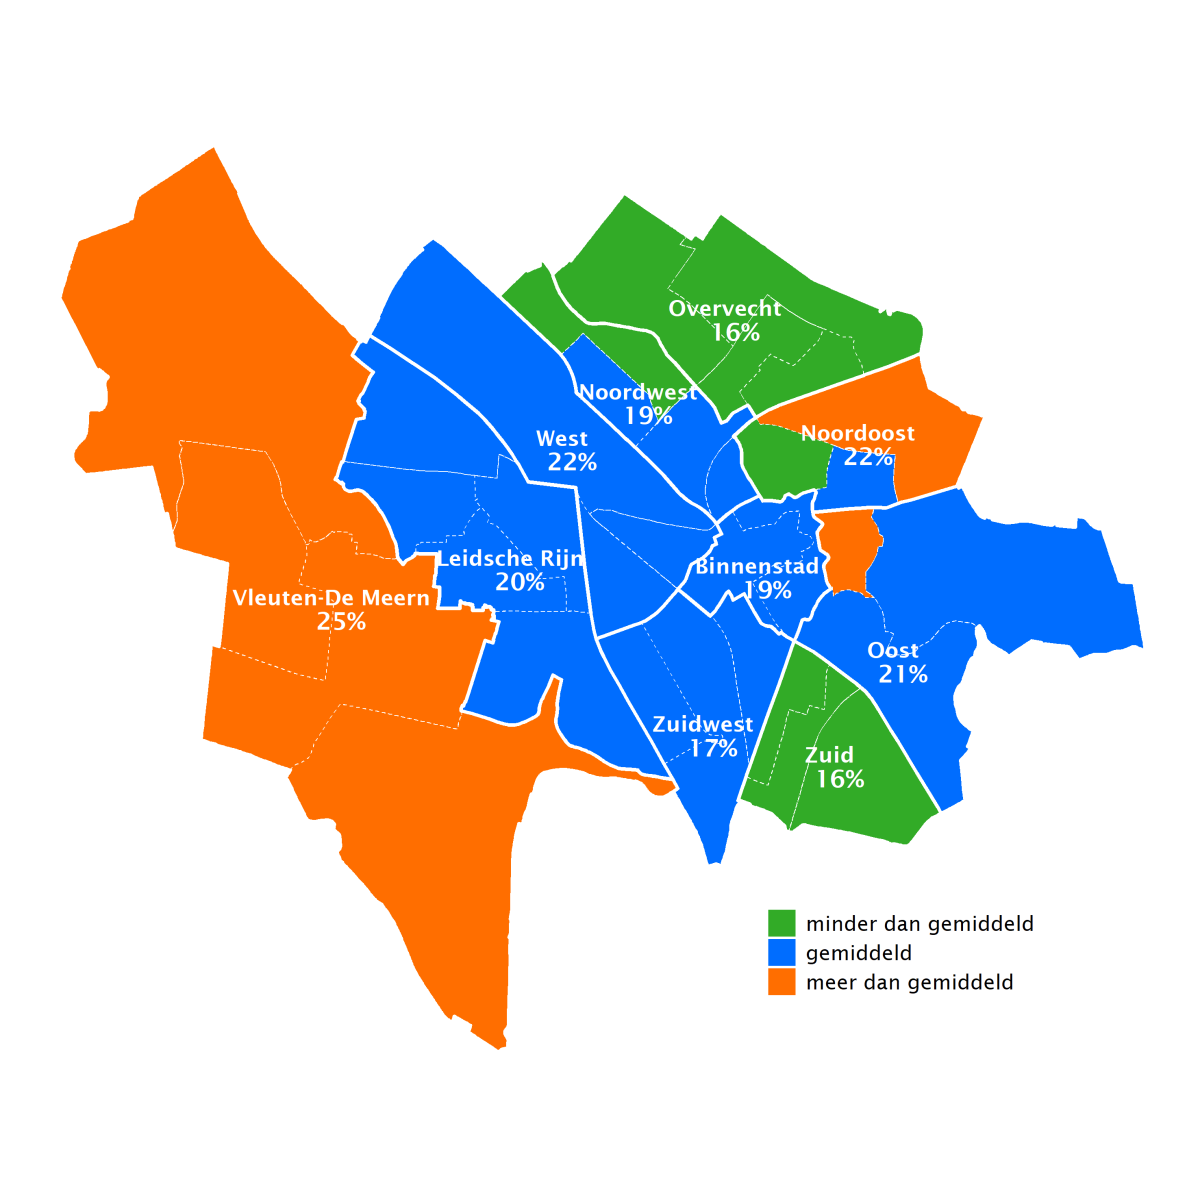 25% van de volwasseen in Vleuten-De Meern voelt zich zeer gezond. In de wijken Overvecht en Zuid is dit 16%.